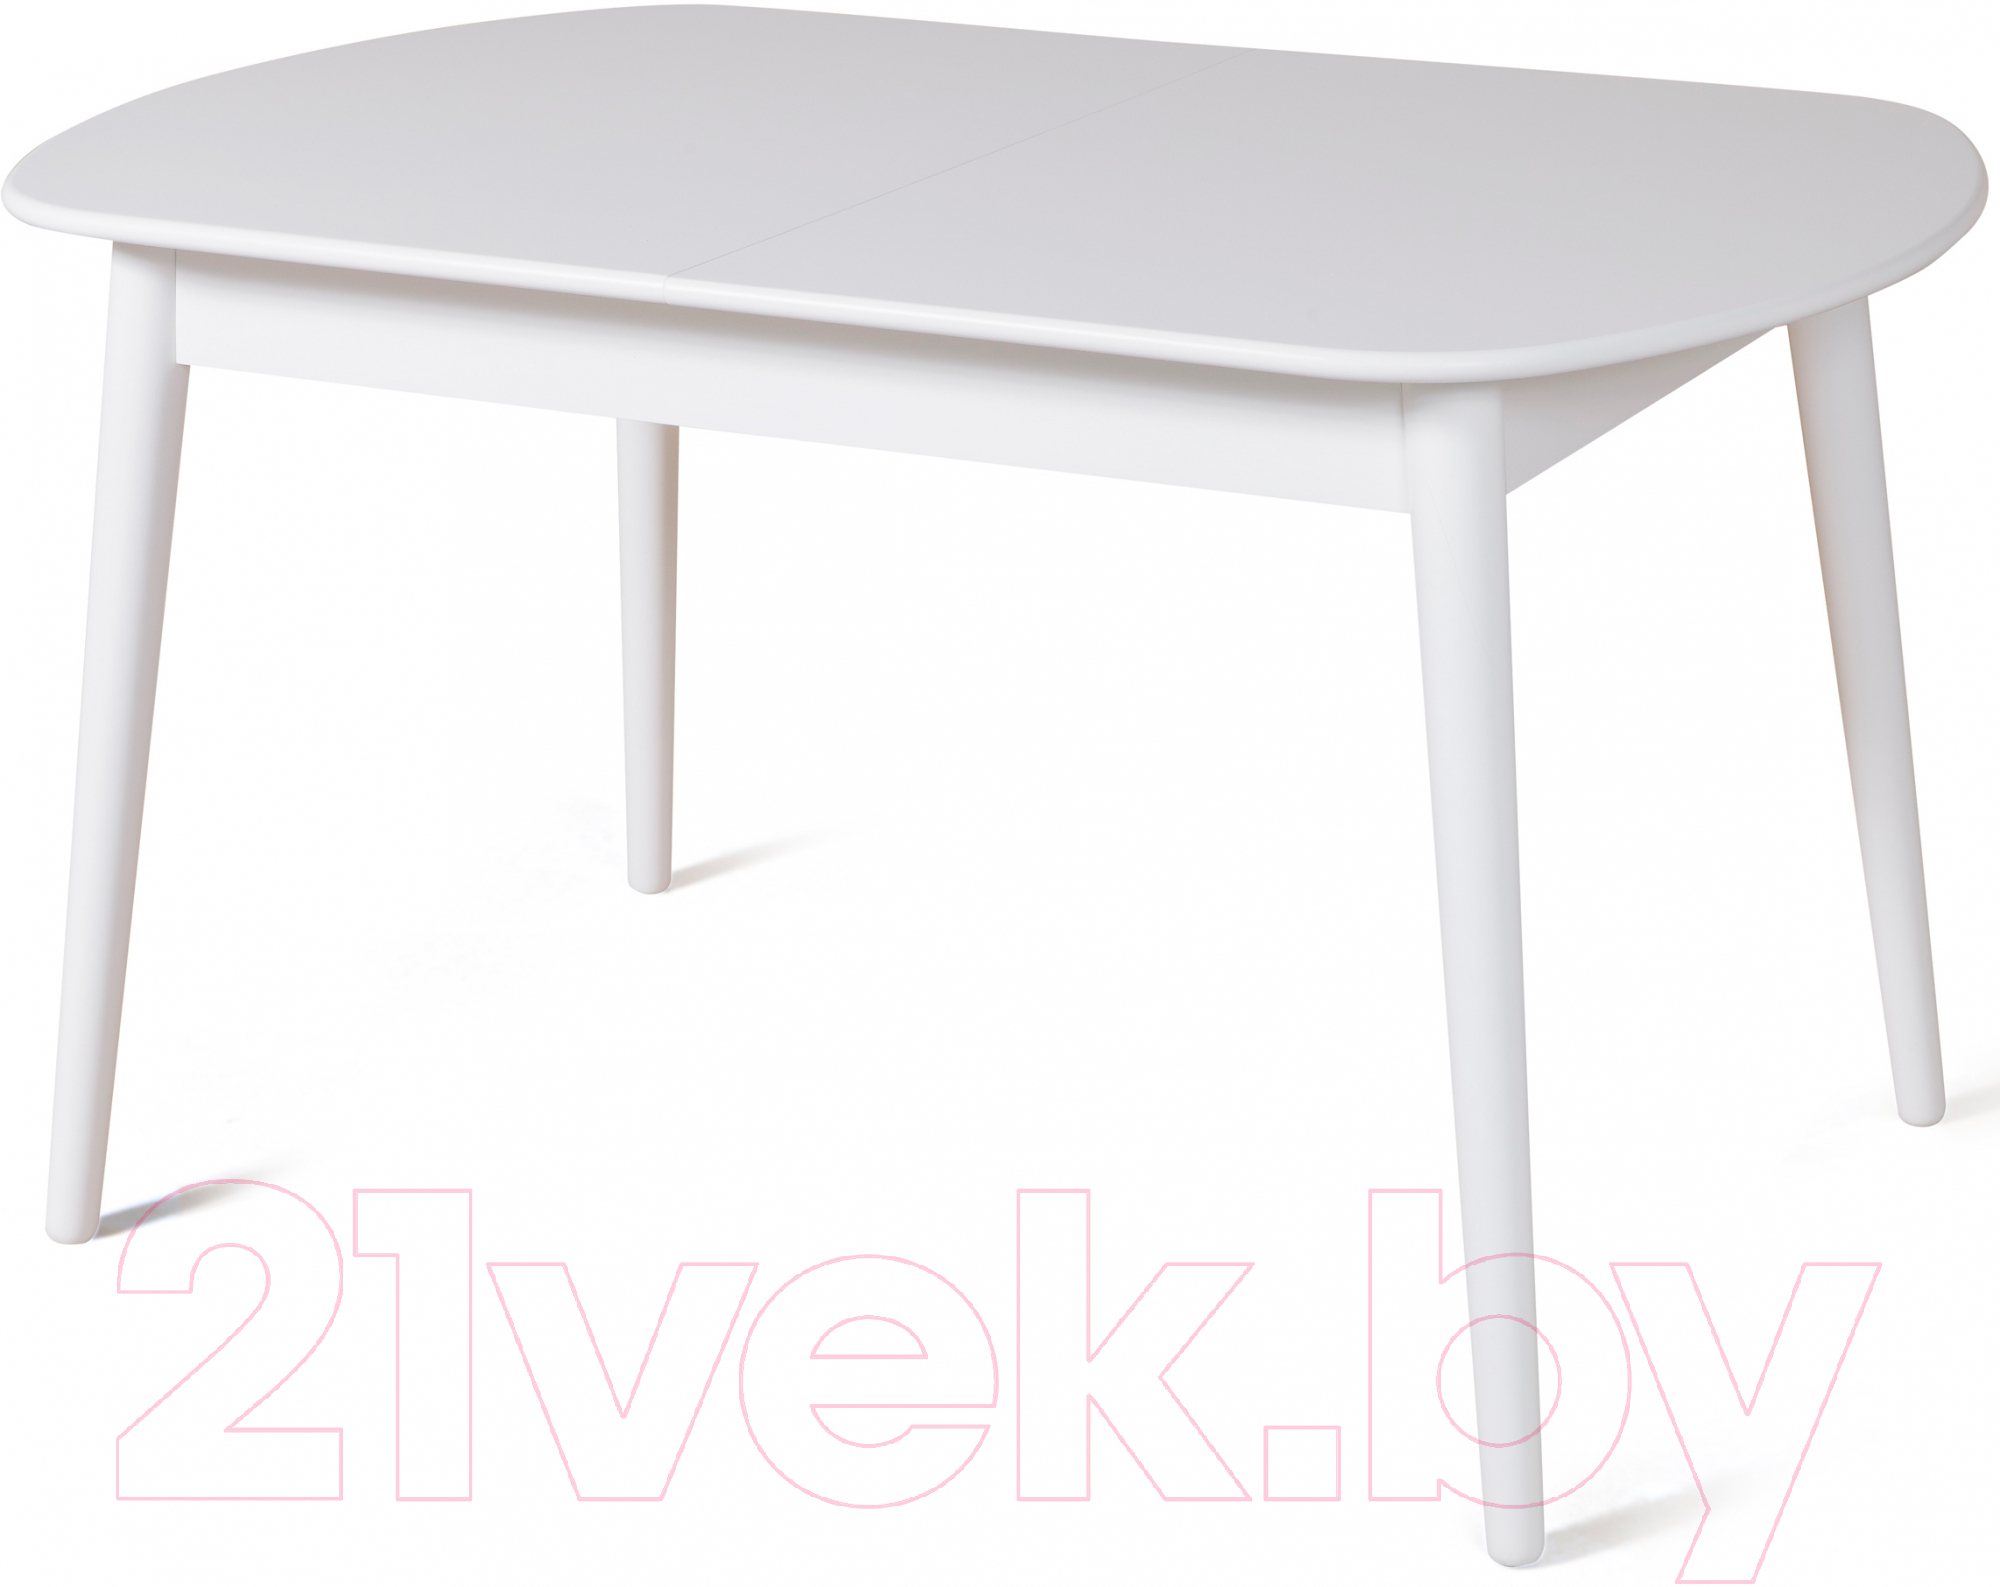 Обеденный стол Мебель-Класс Эней (белый)